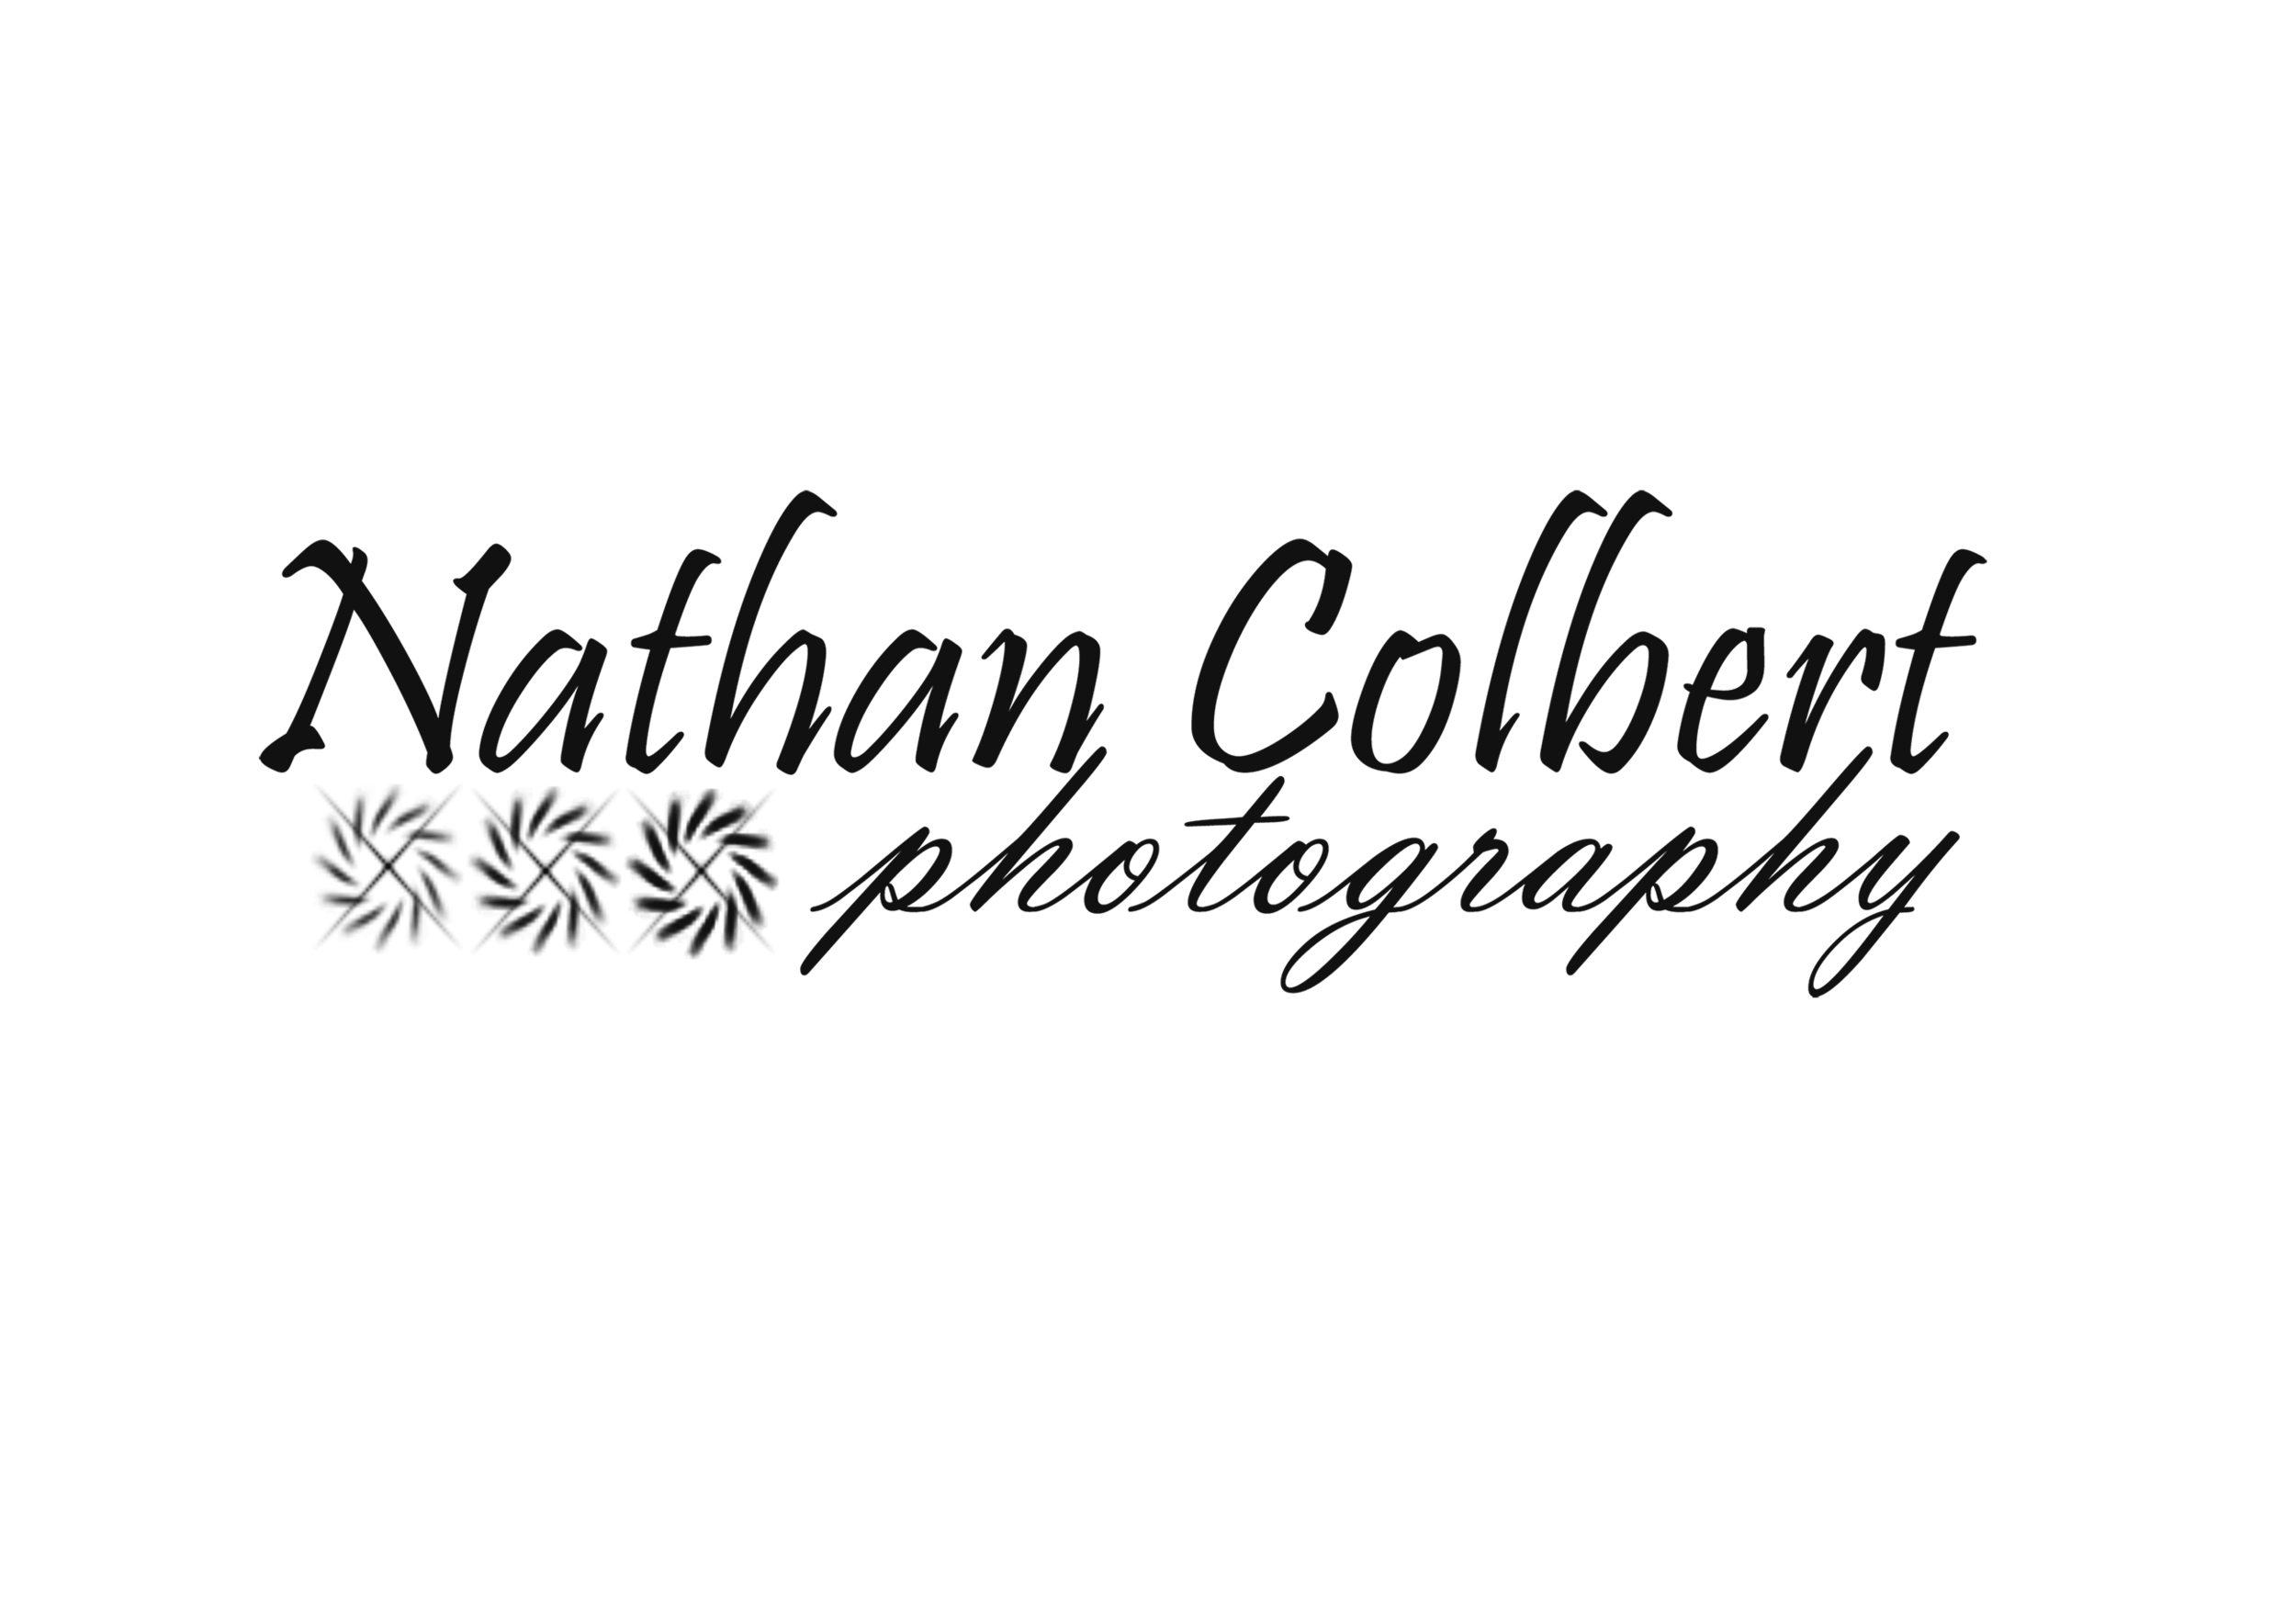 Nathan Colbert Photography